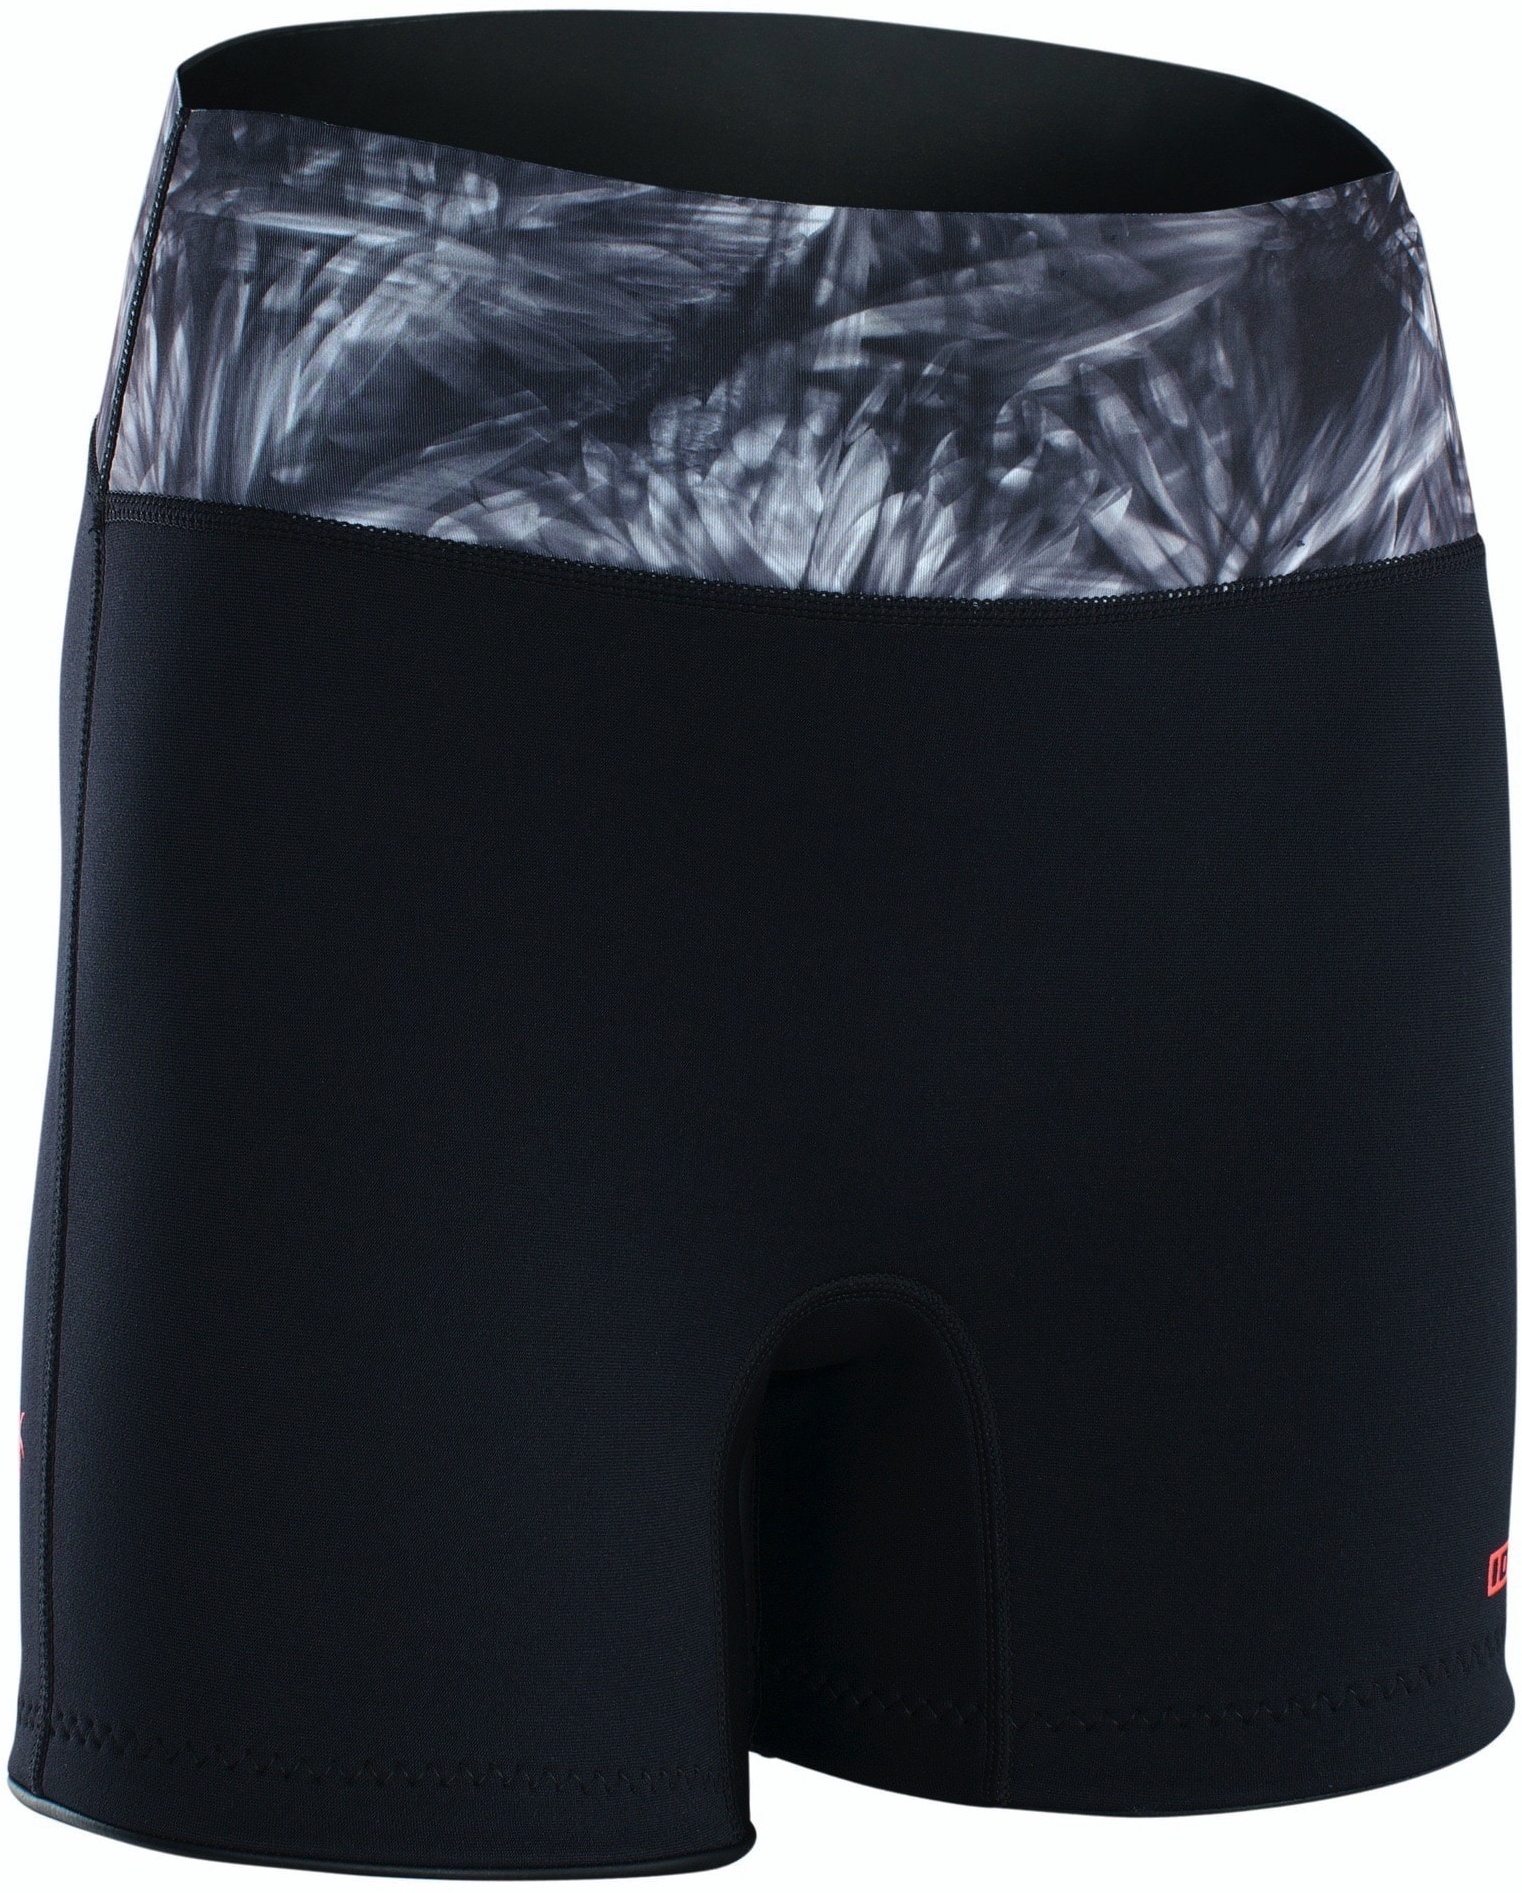 ION Neo Shorts Damen 23 Hose Warm Unterteil Rushguard Leicht, Größe: XL, Farbe: 013 black-flowers